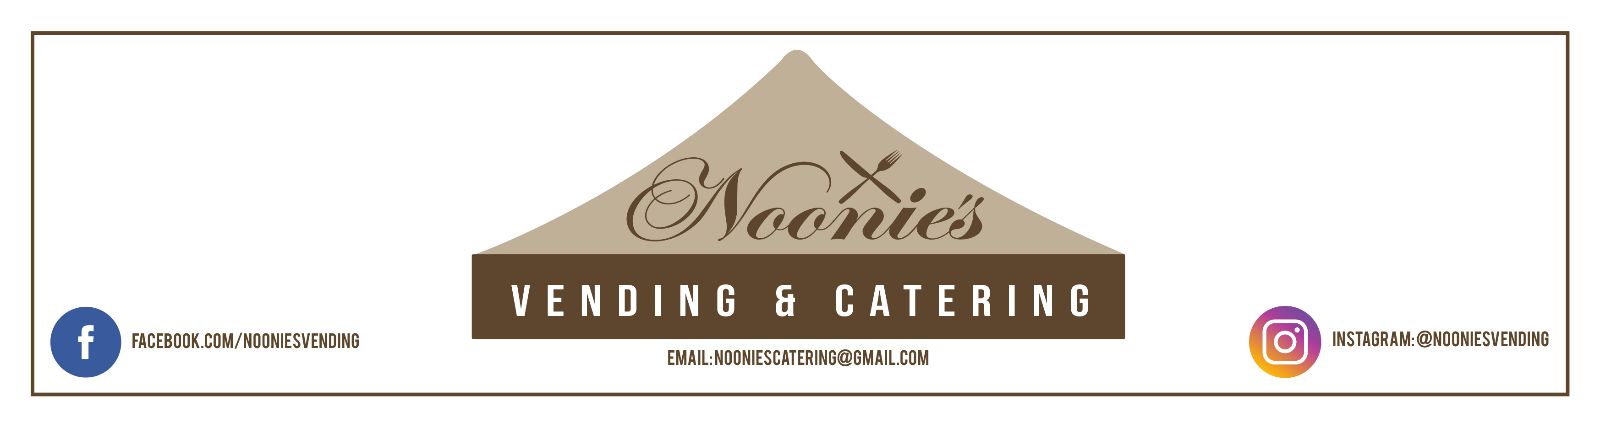 Noonie's Vending & Catering, LLC